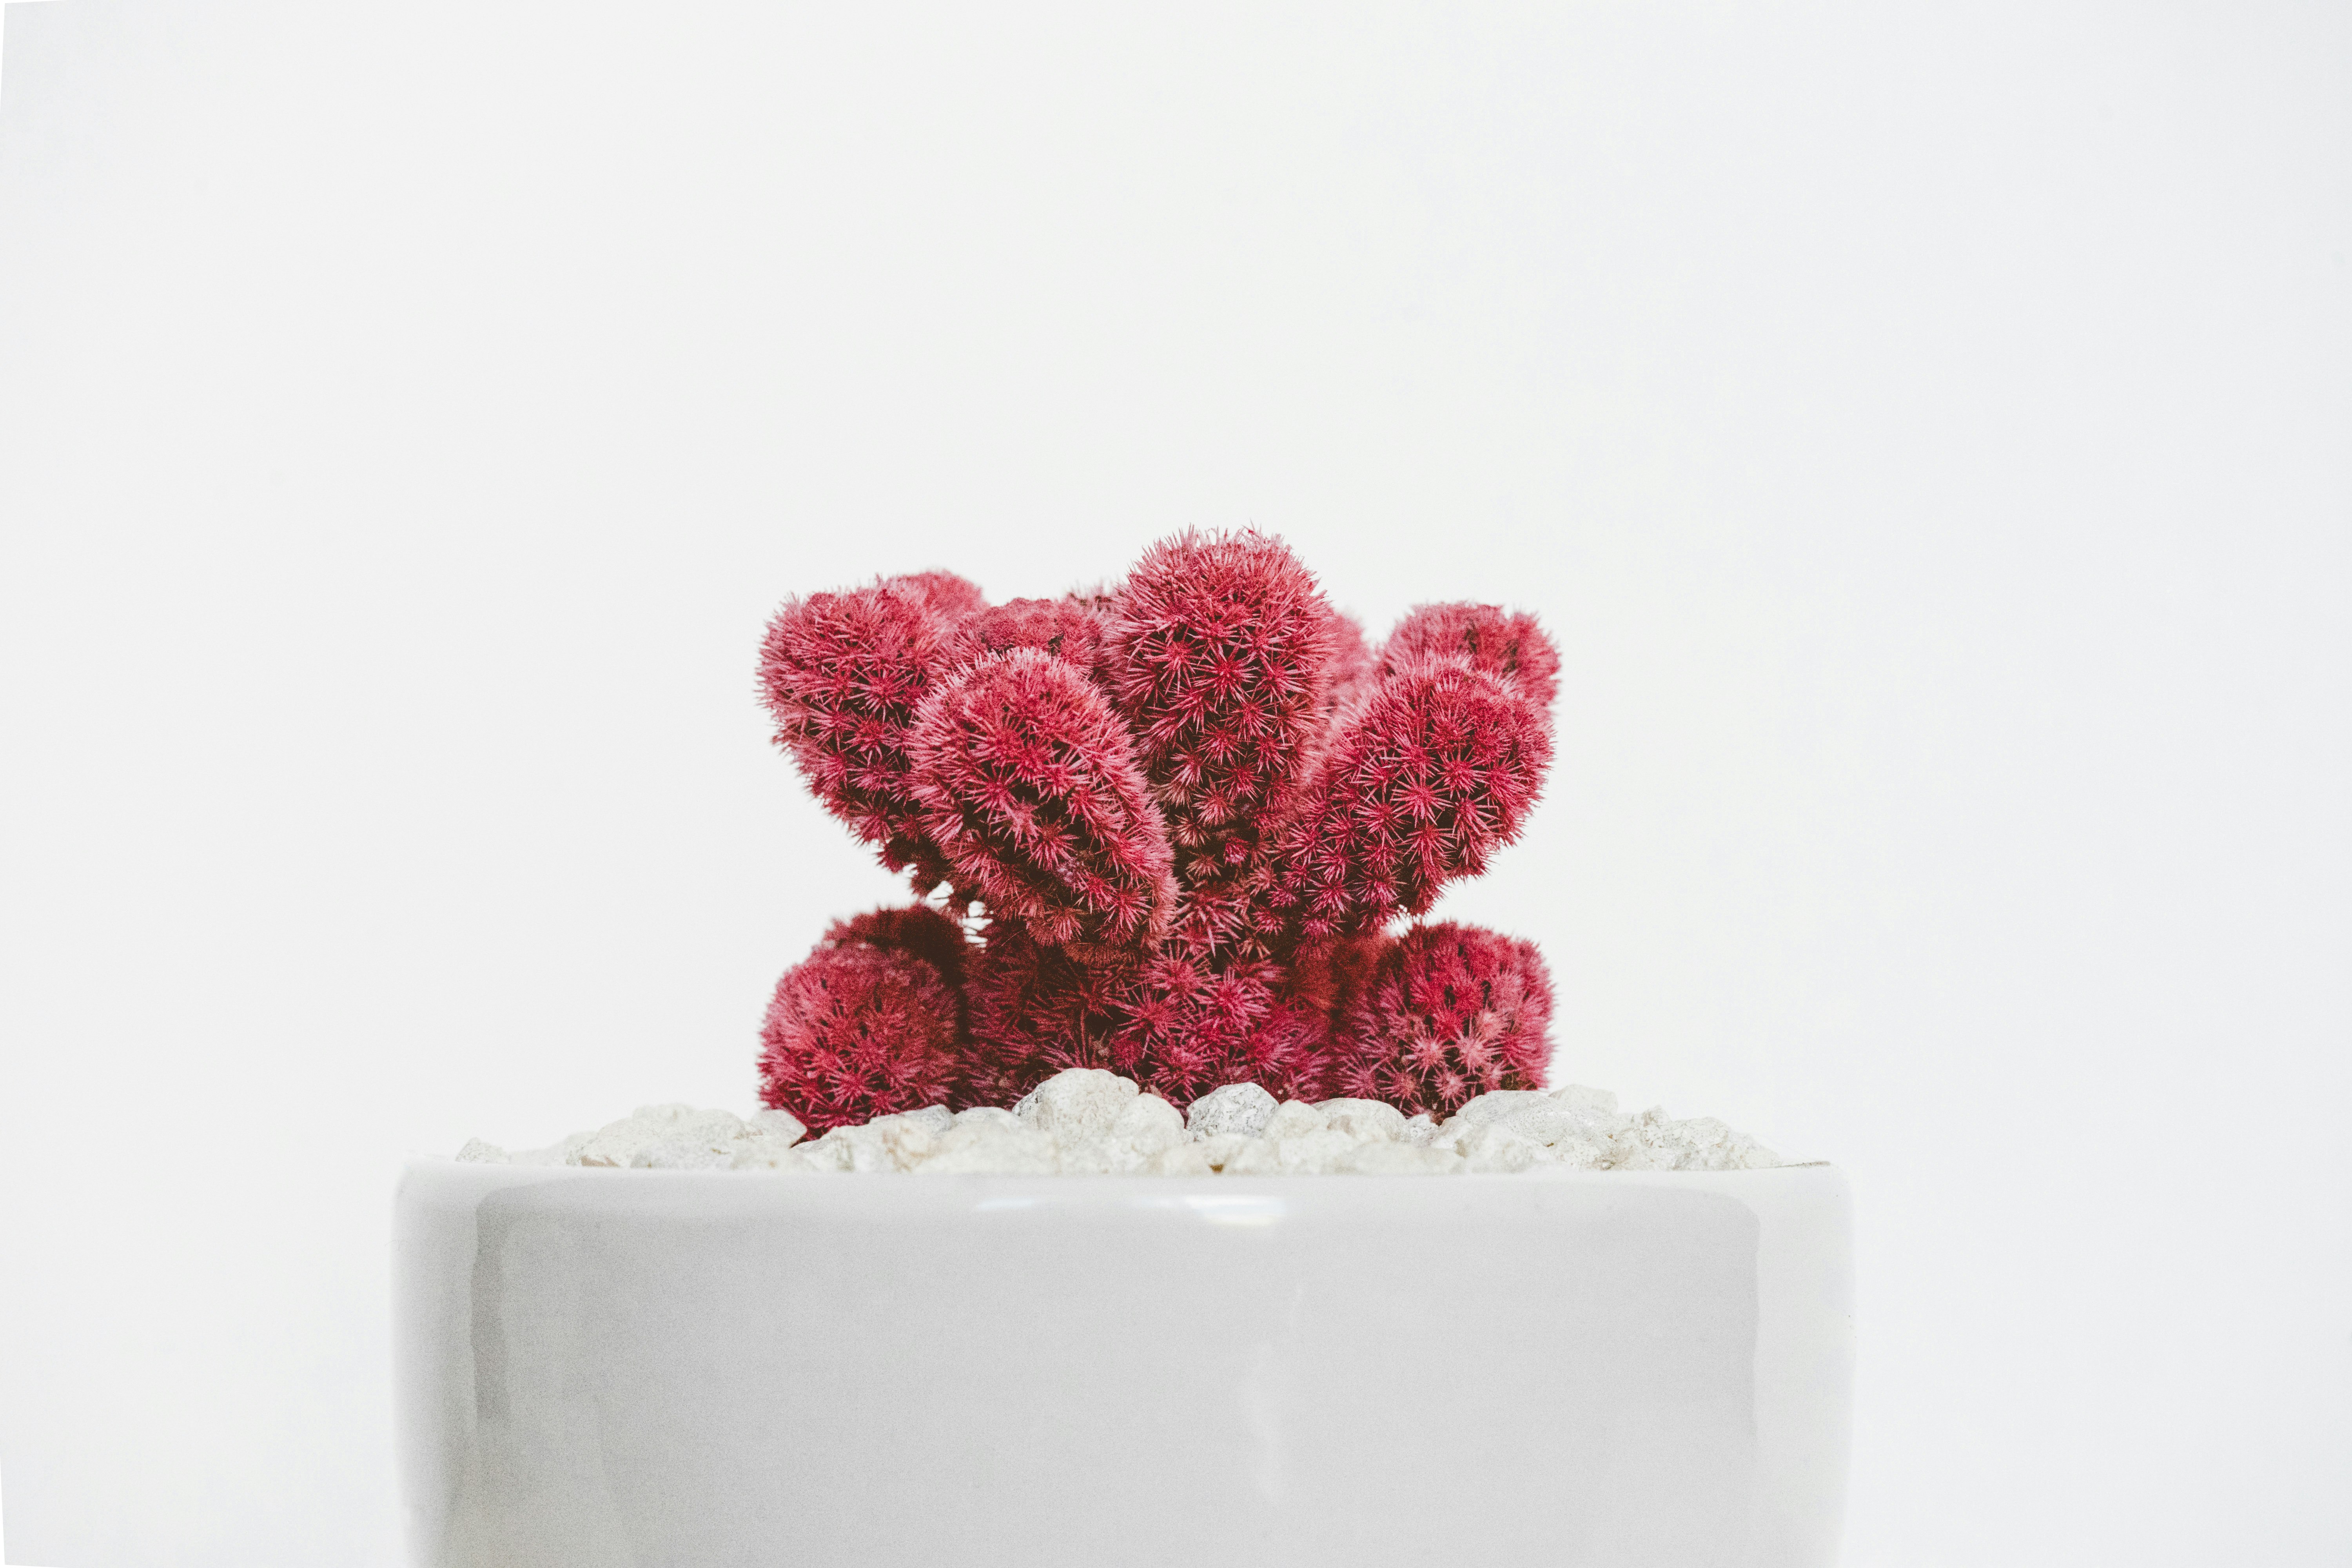 red cactus plant on white ceramic pot